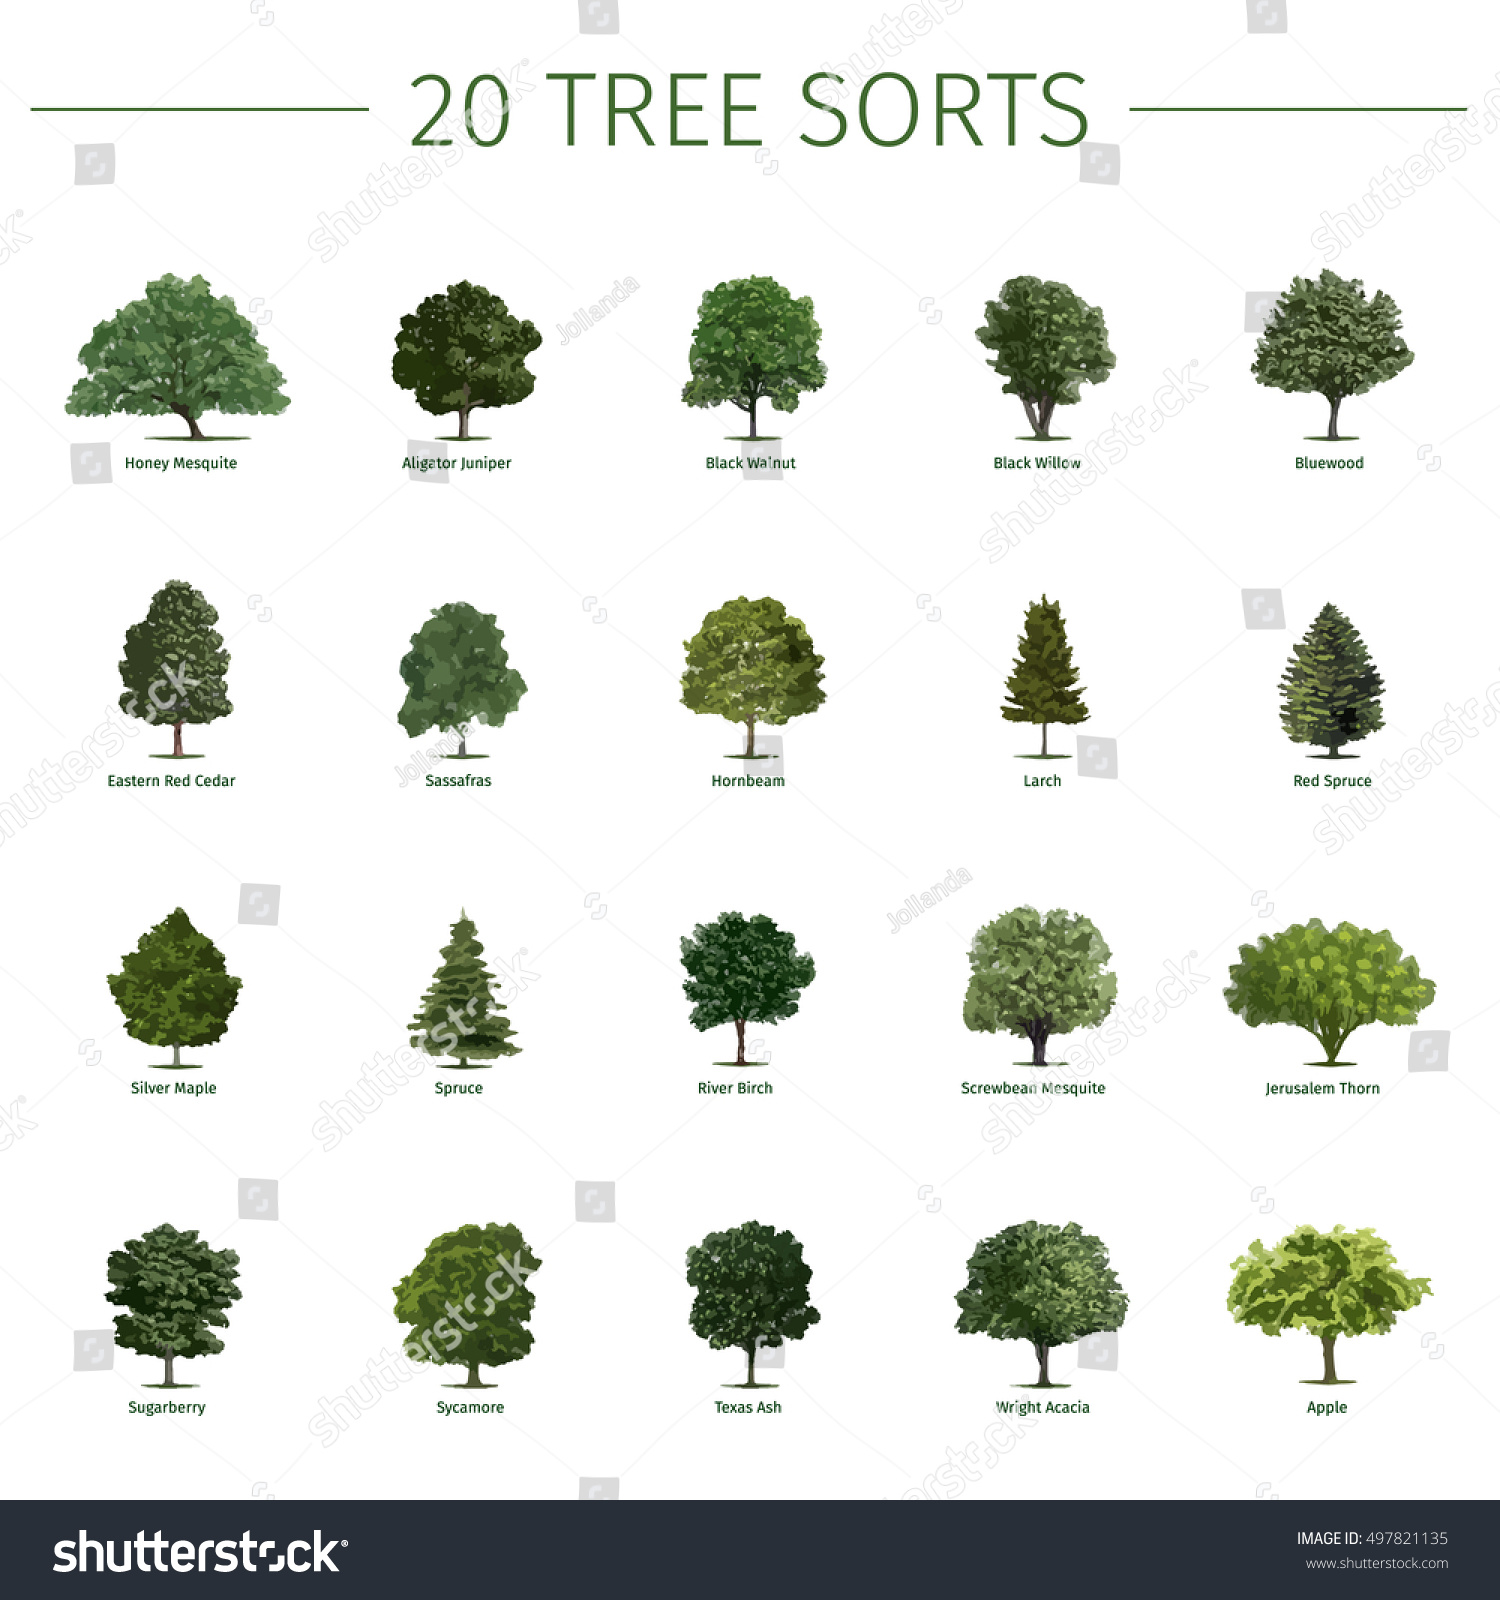 Twenty Different Tree Sorts Names Vector Stock Vector 497821135 ...